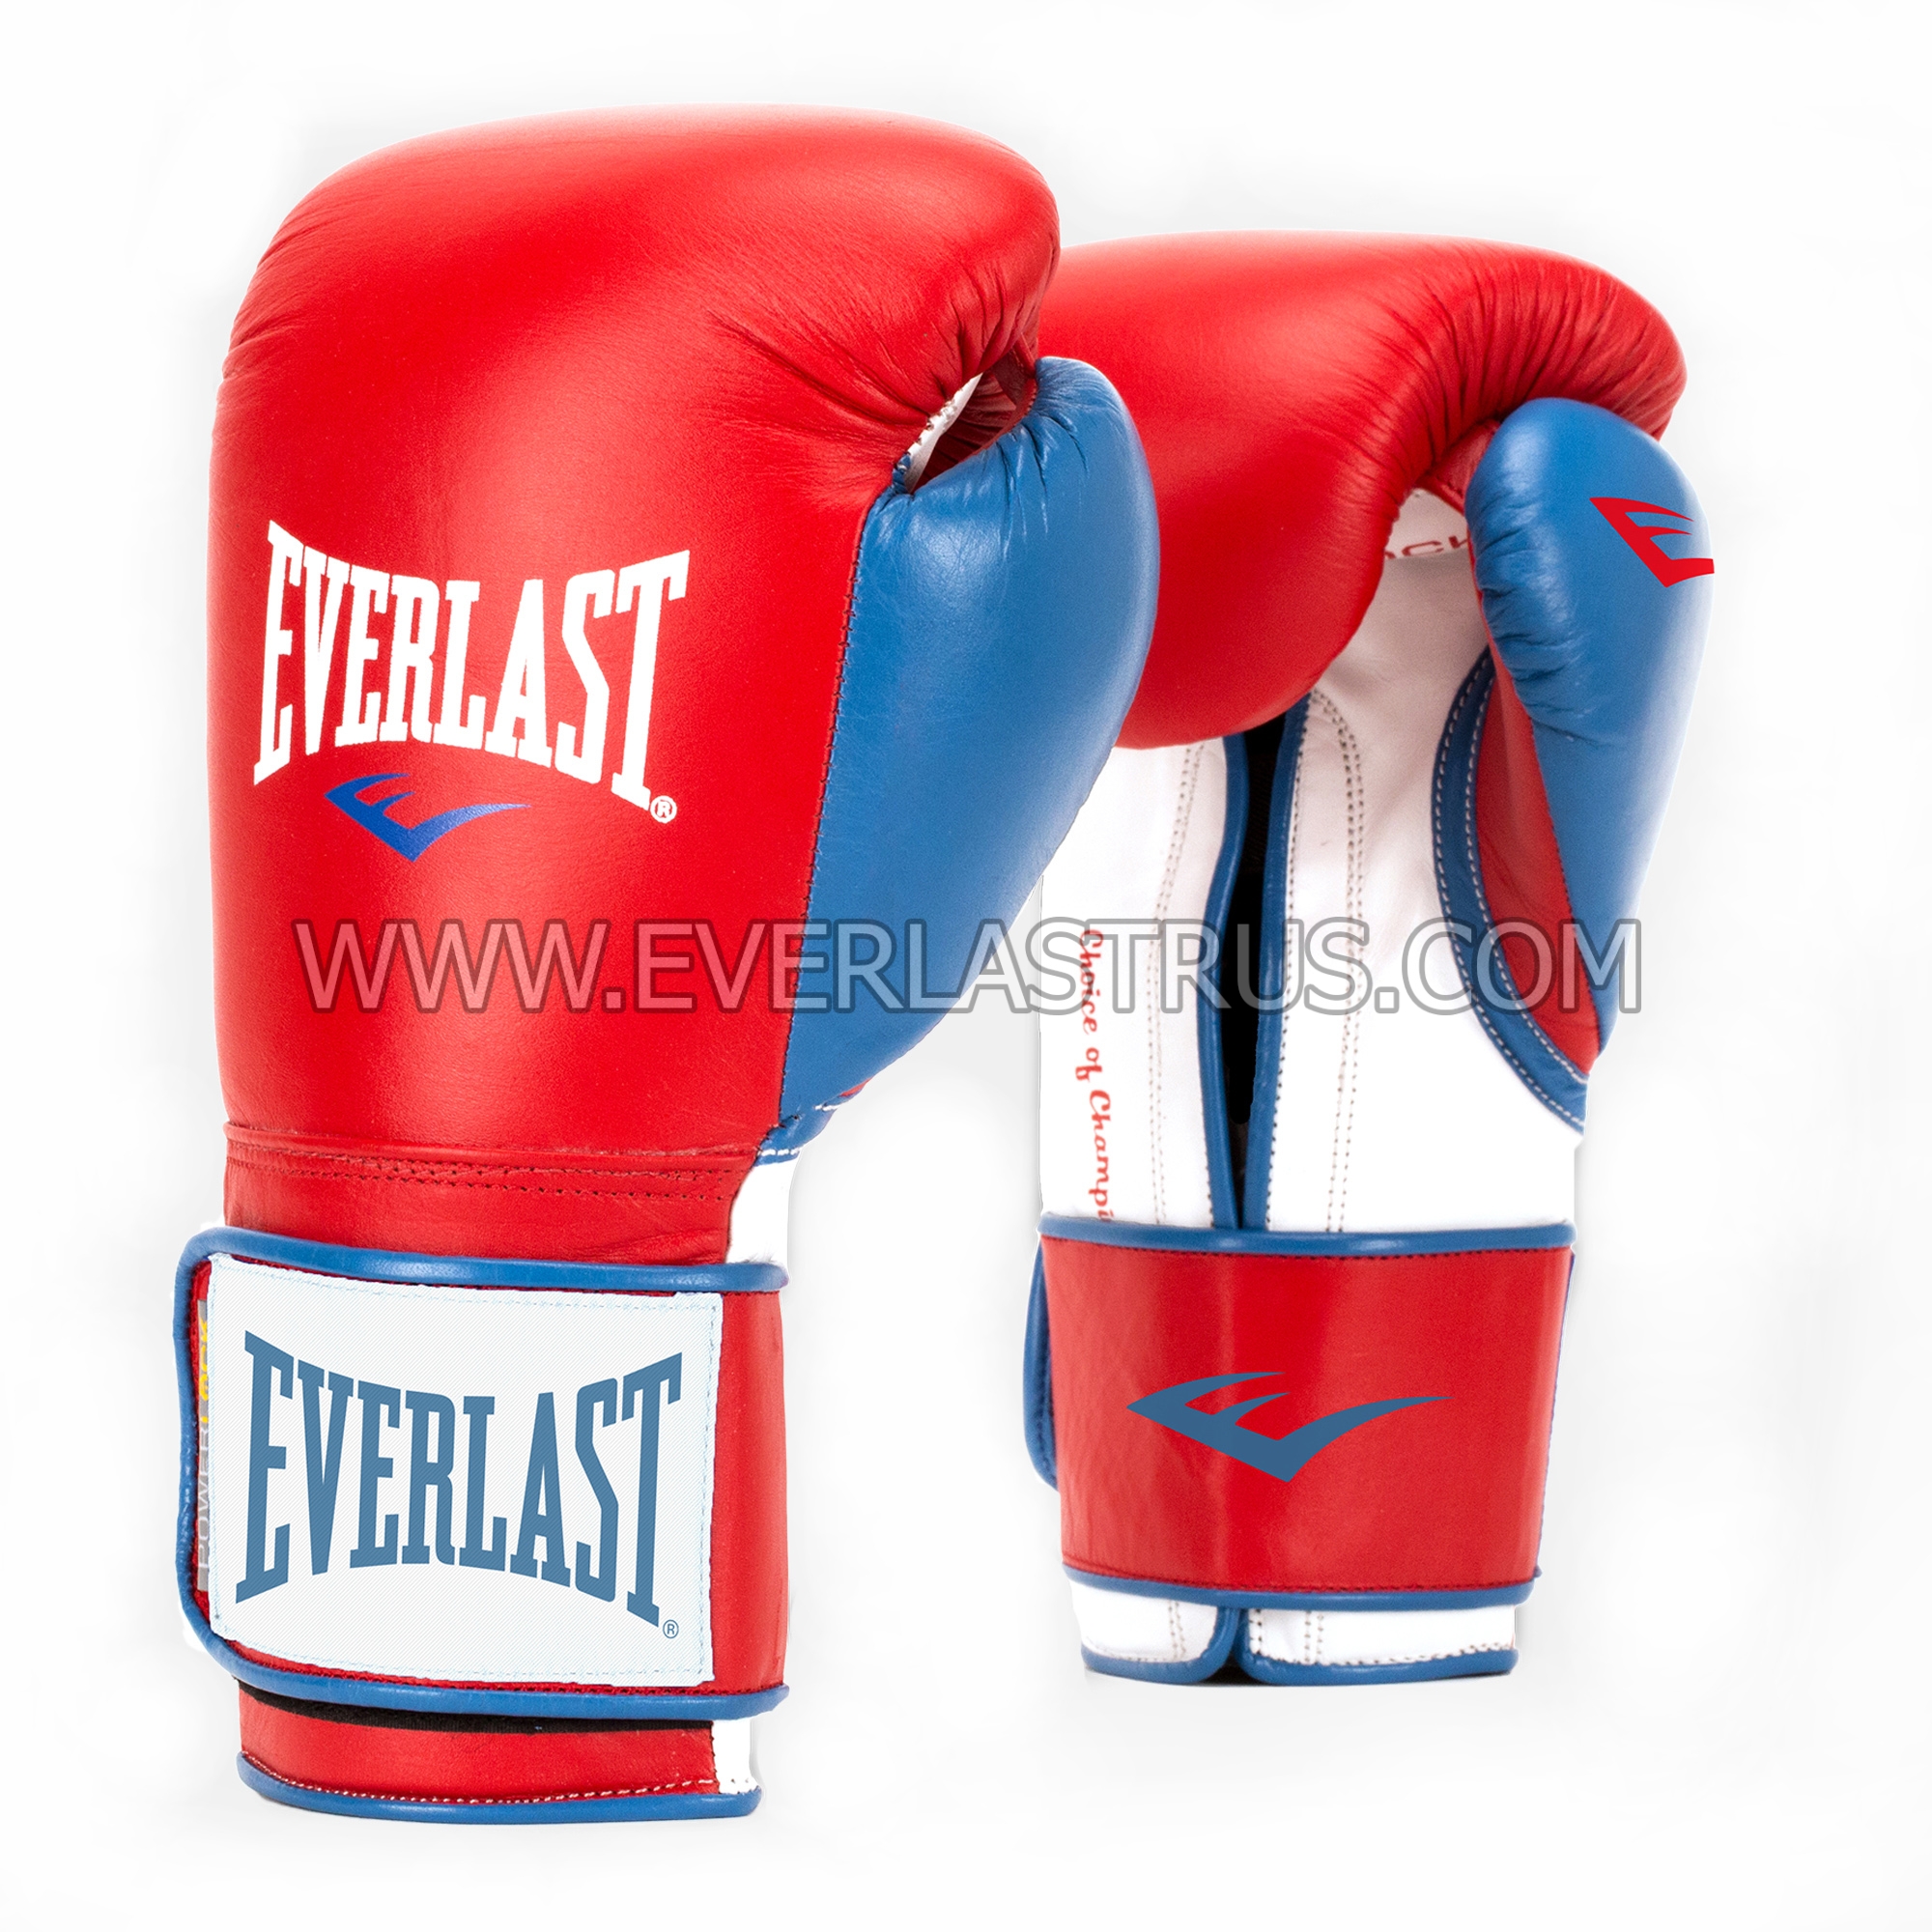 Фото 2: Перчатки боксерские Everlast Powerlock PU P00000722 кожзаменитель